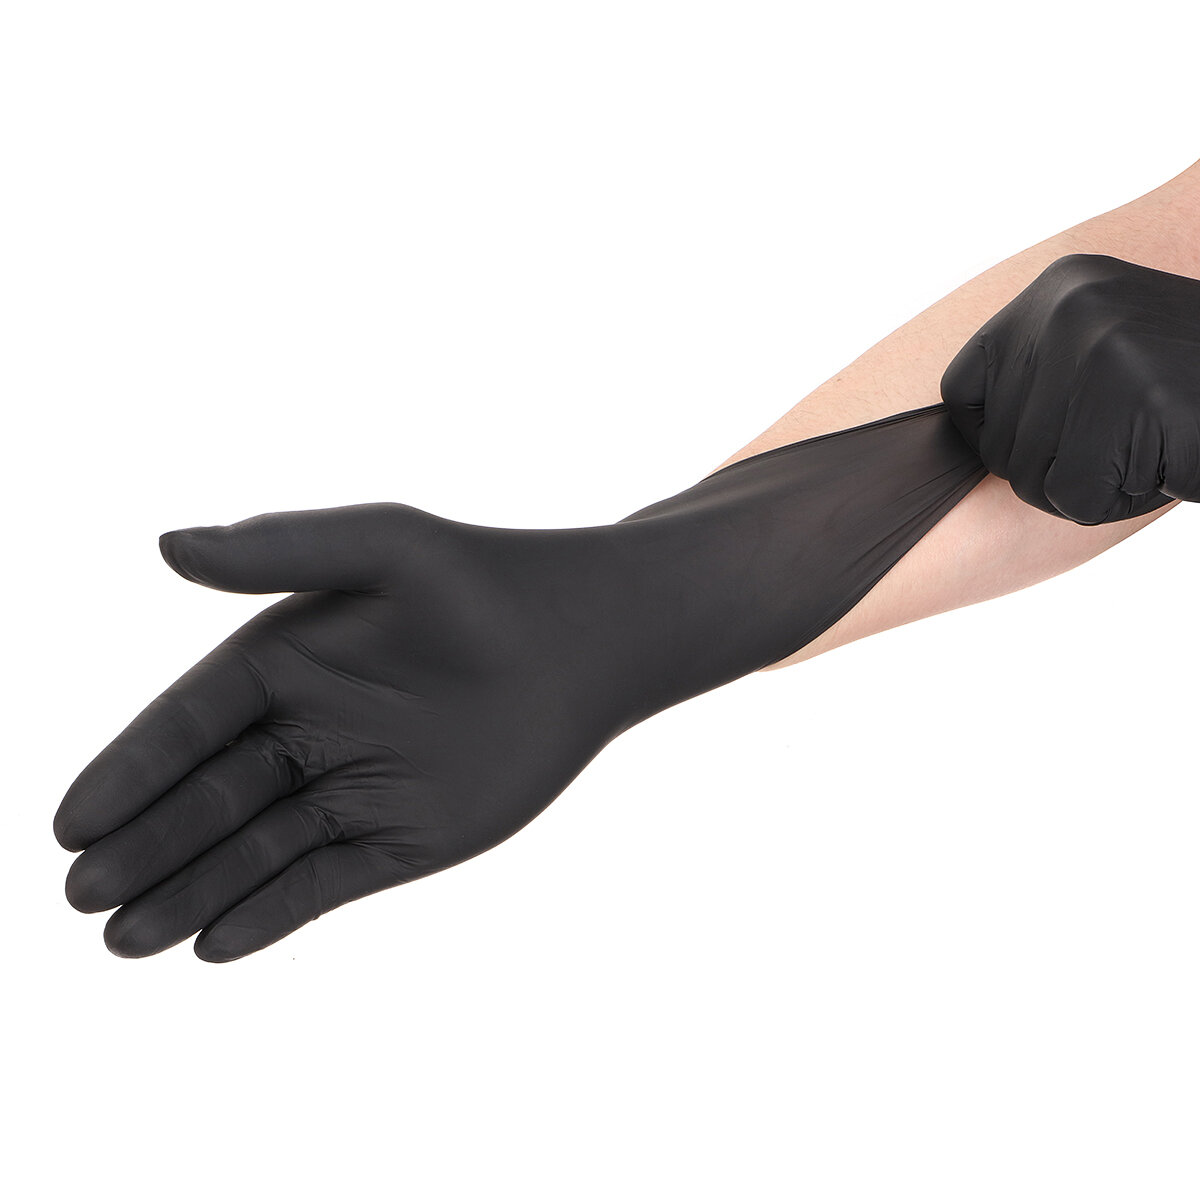 

100шт Caveen нитриловые перчатки, одноразовые перчатки, без пудры, без латекса, противоаллергические, износостойкие S /